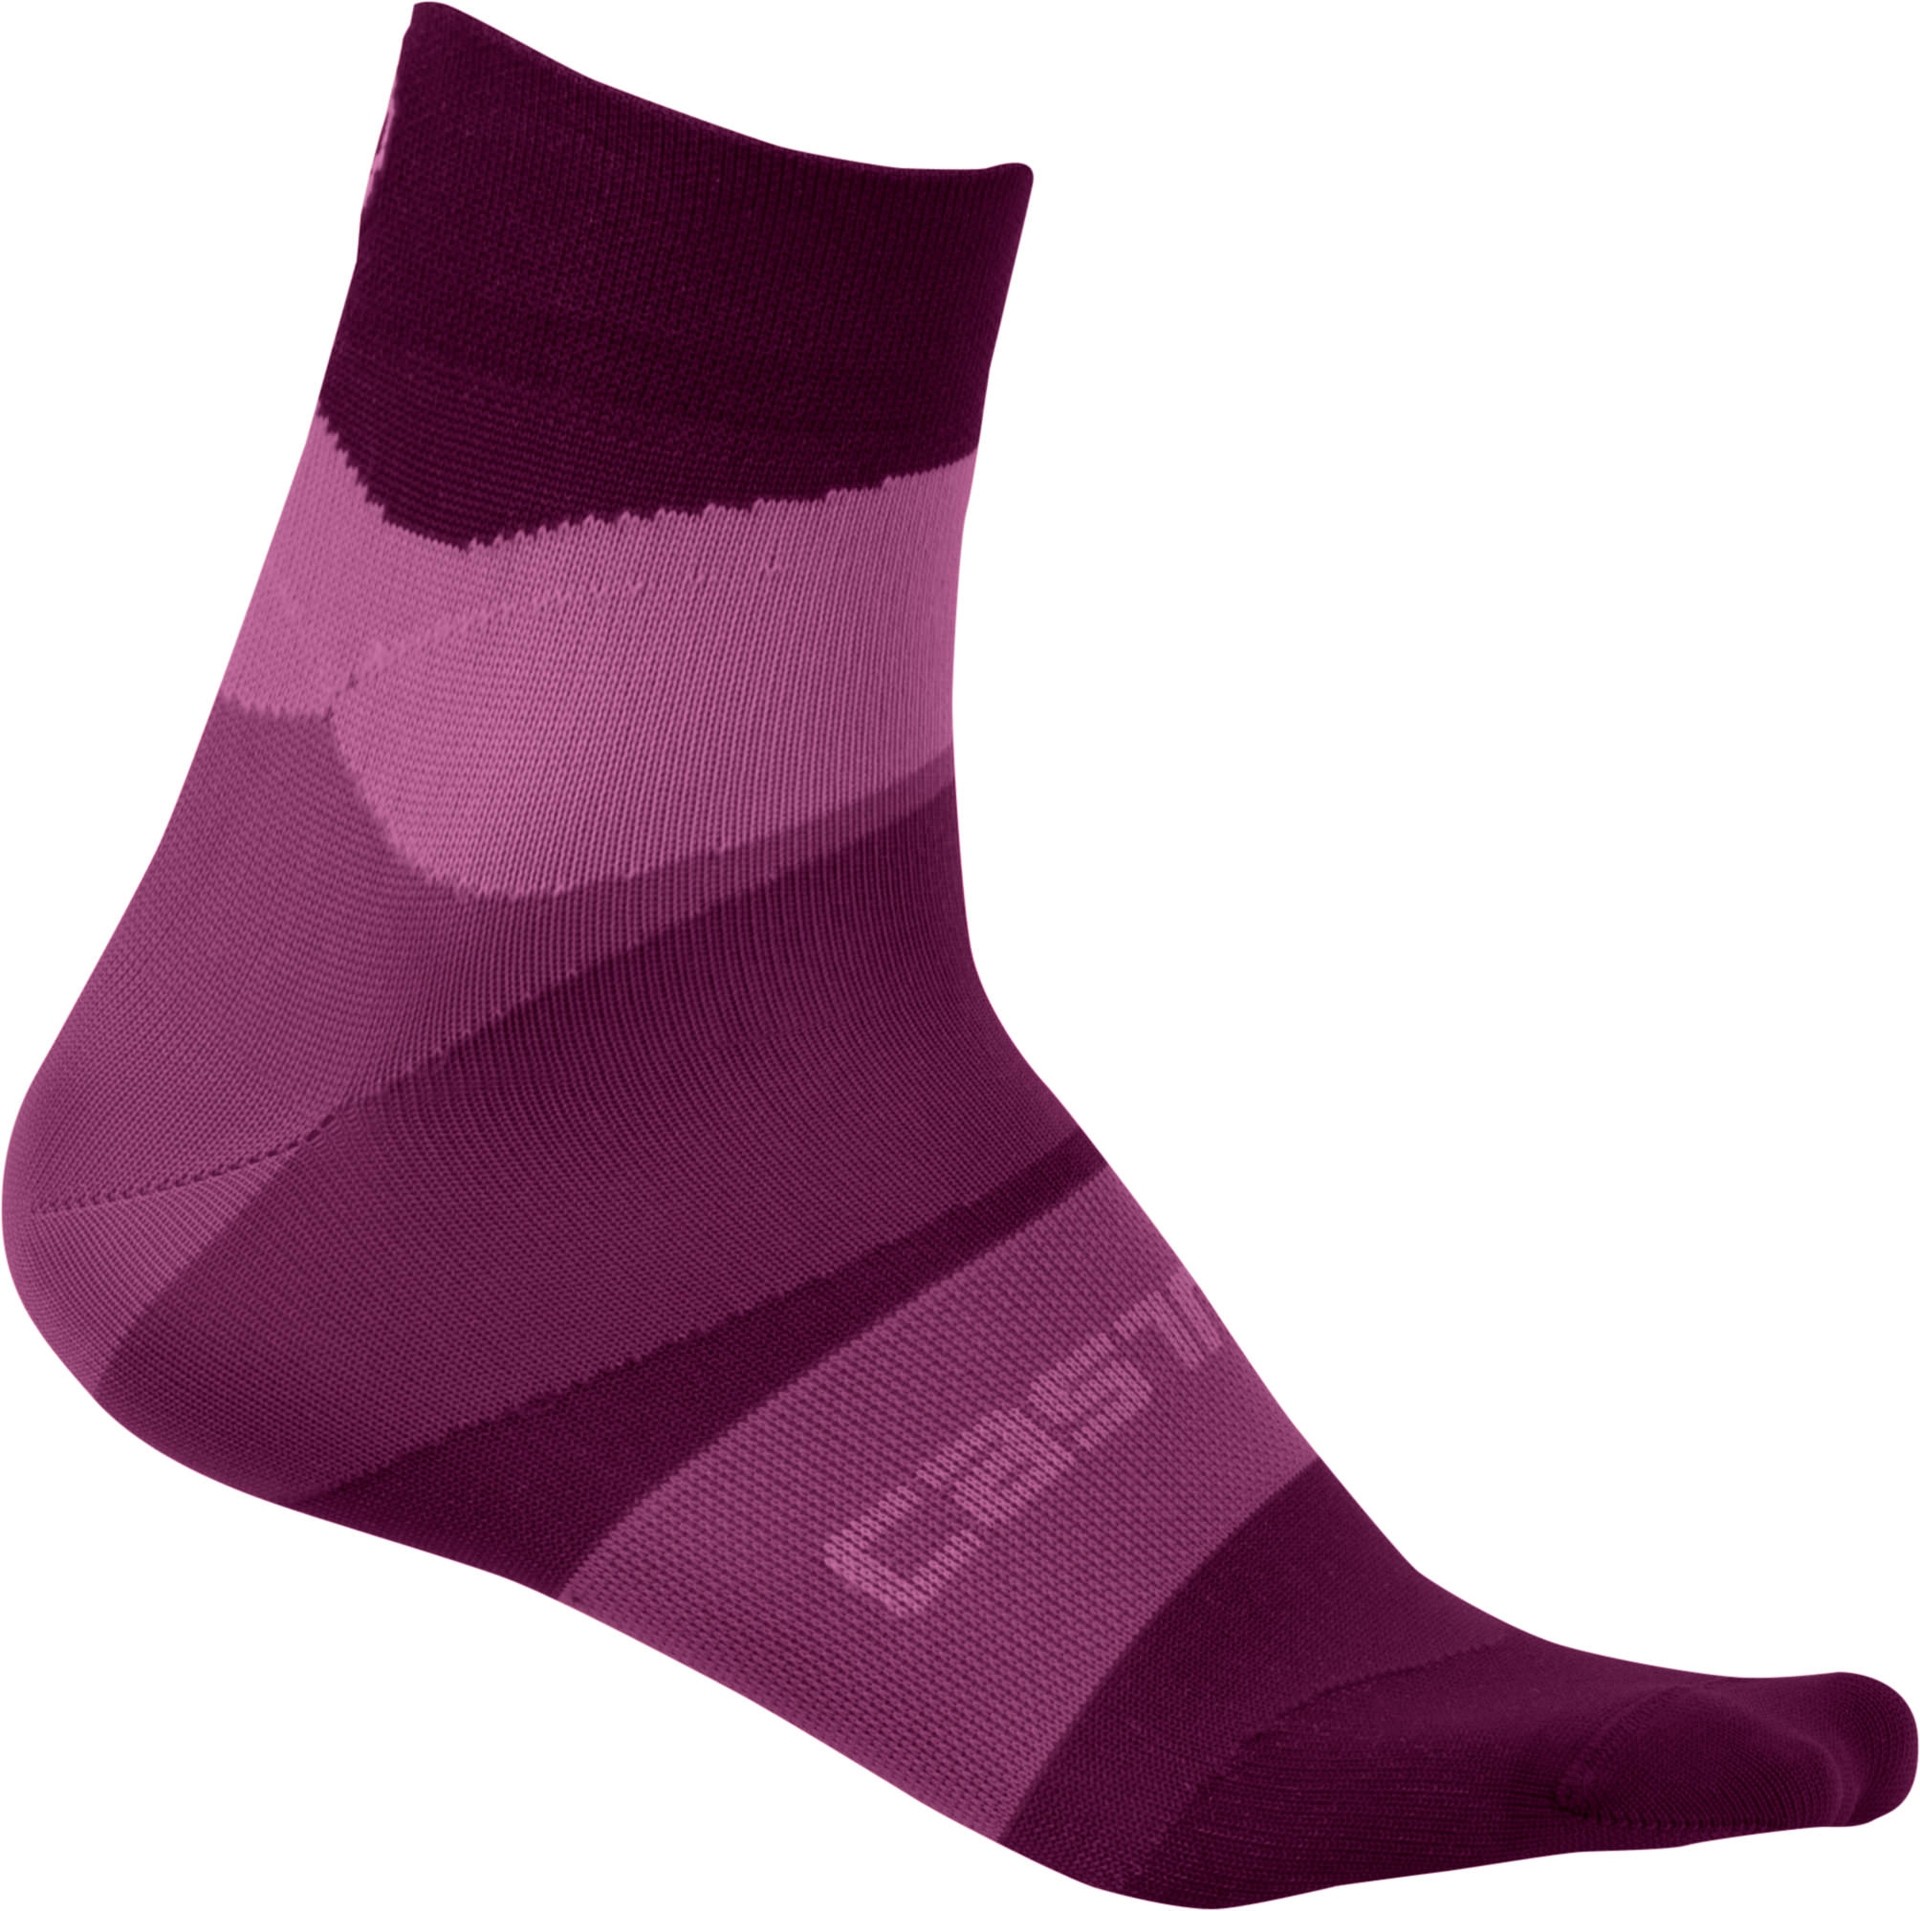 Castelli tr chaussettes de cyclisme femme onda cyclamen violet